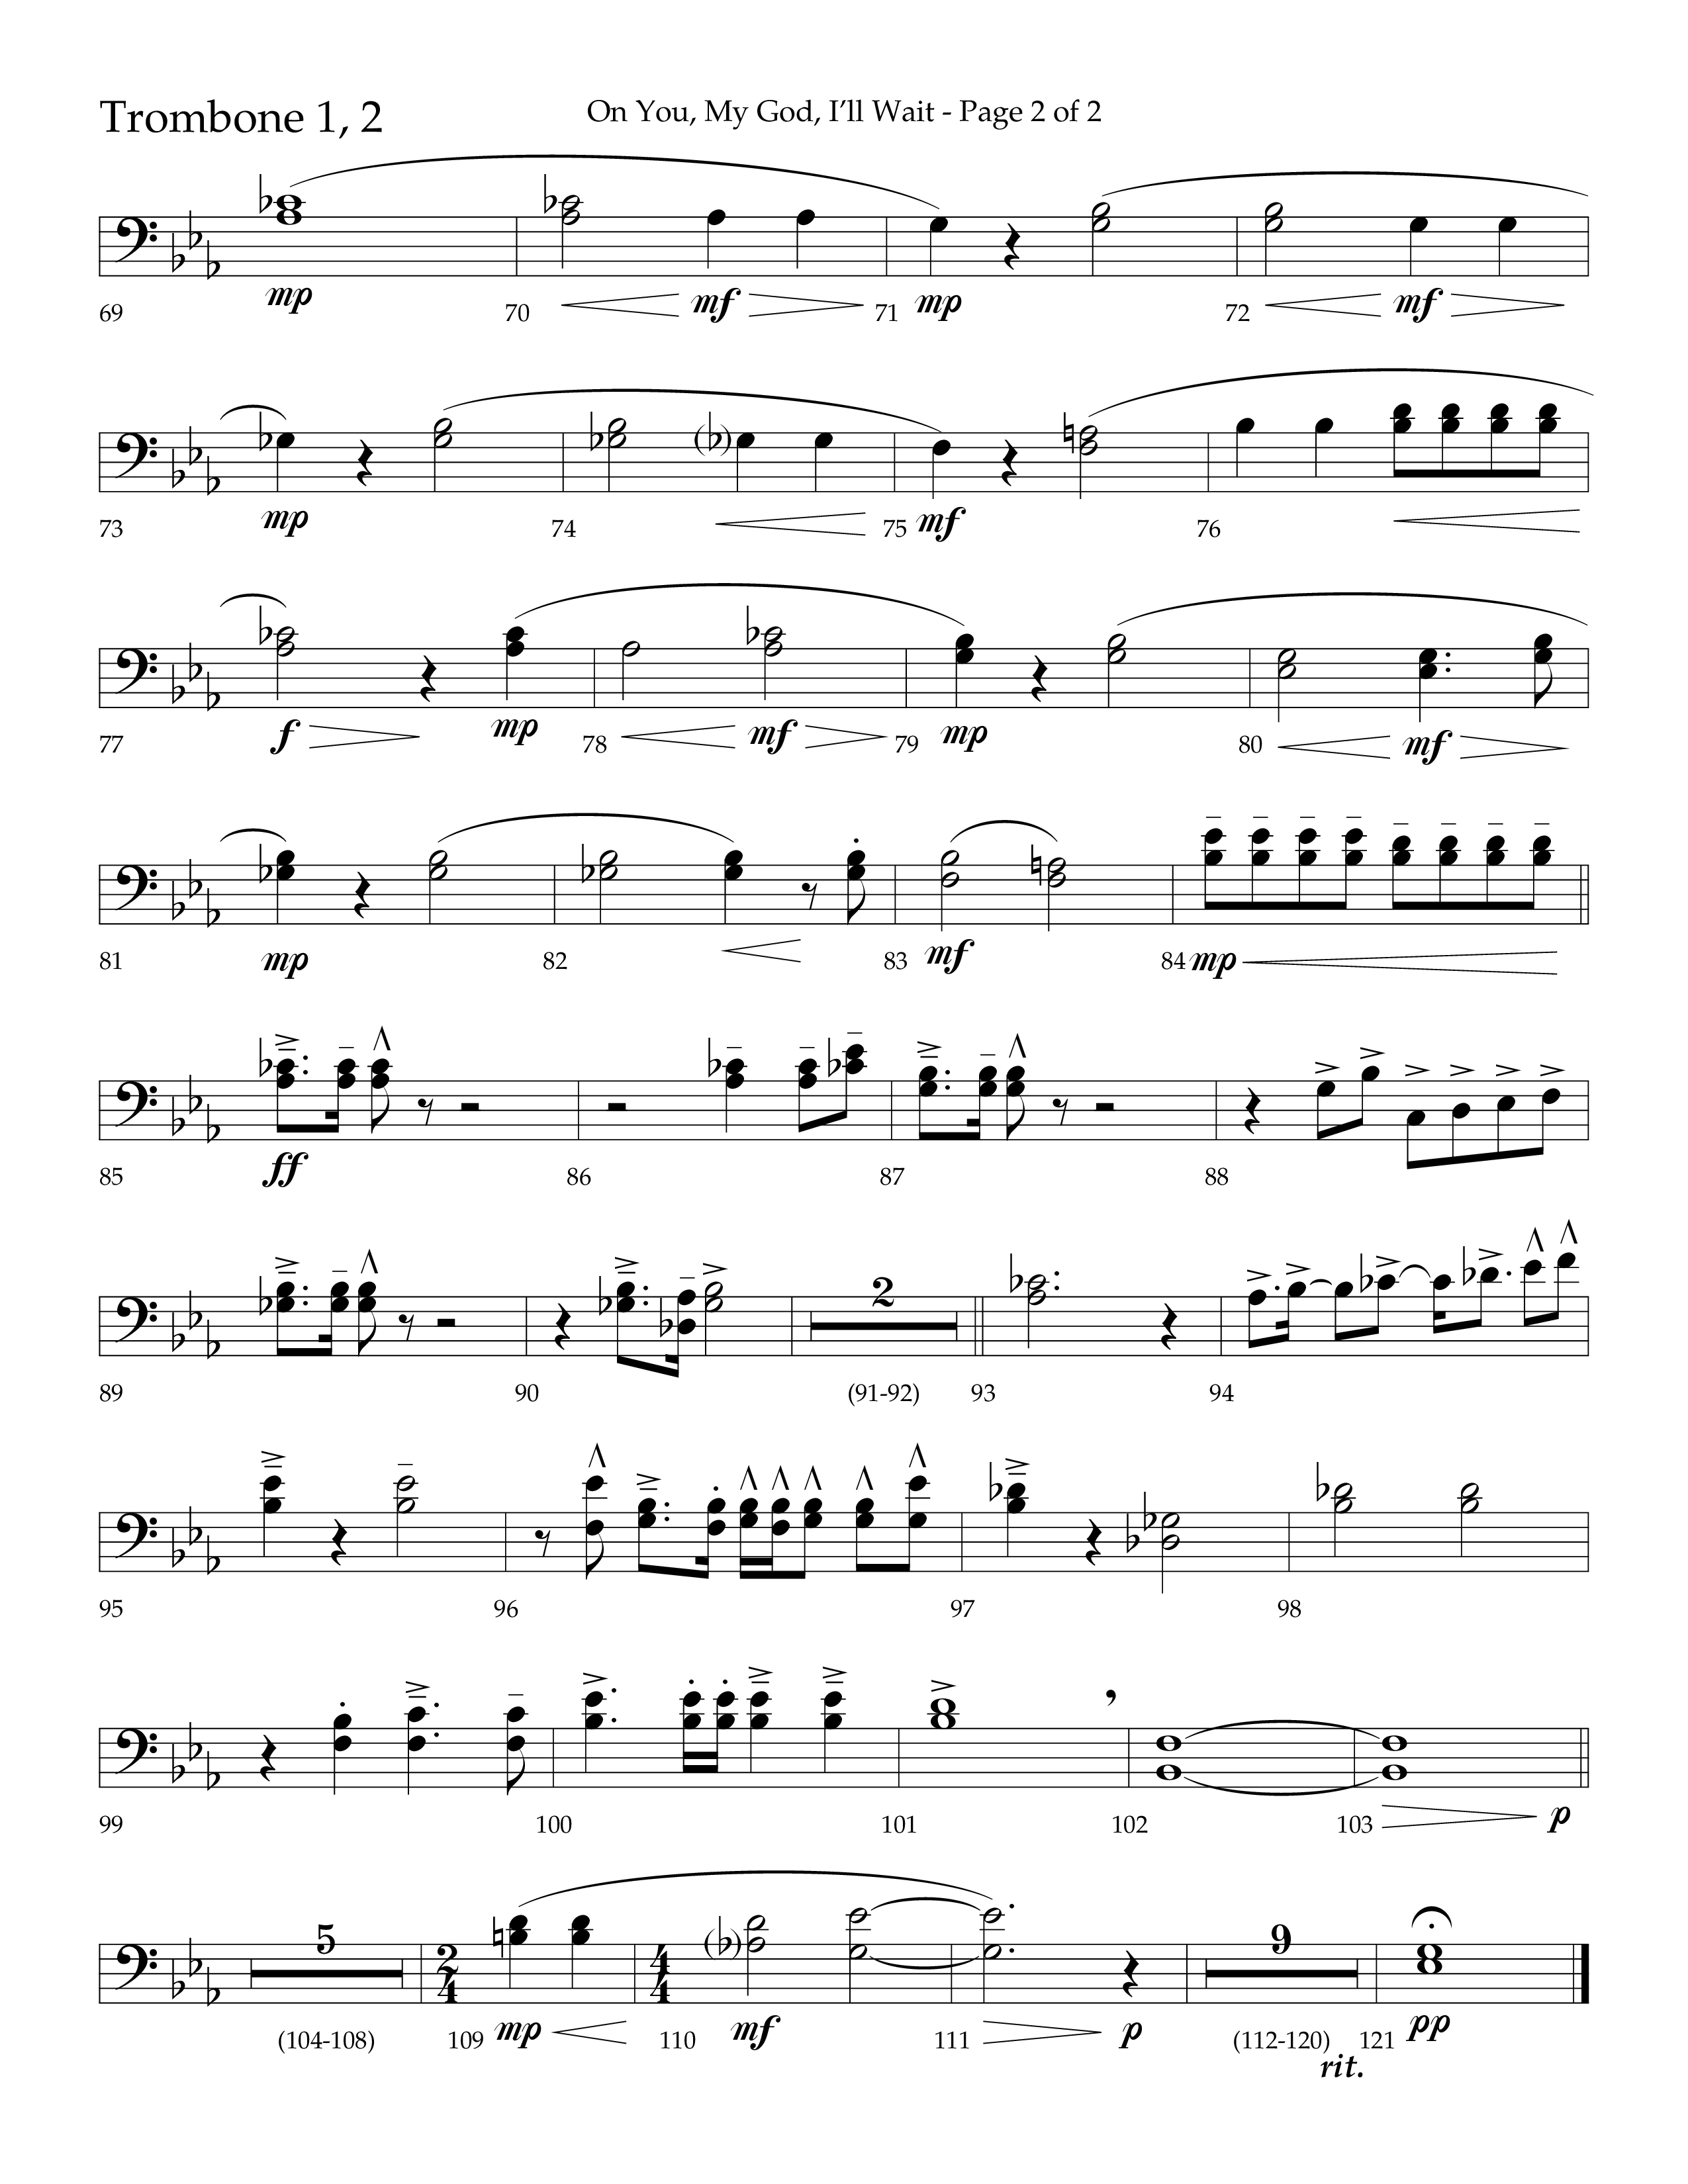 On You My God I'll Wait (Choral Anthem SATB) Trombone 1/2 (Lifeway Choral / Arr. Craig Adams / Arr. Mike Harland)